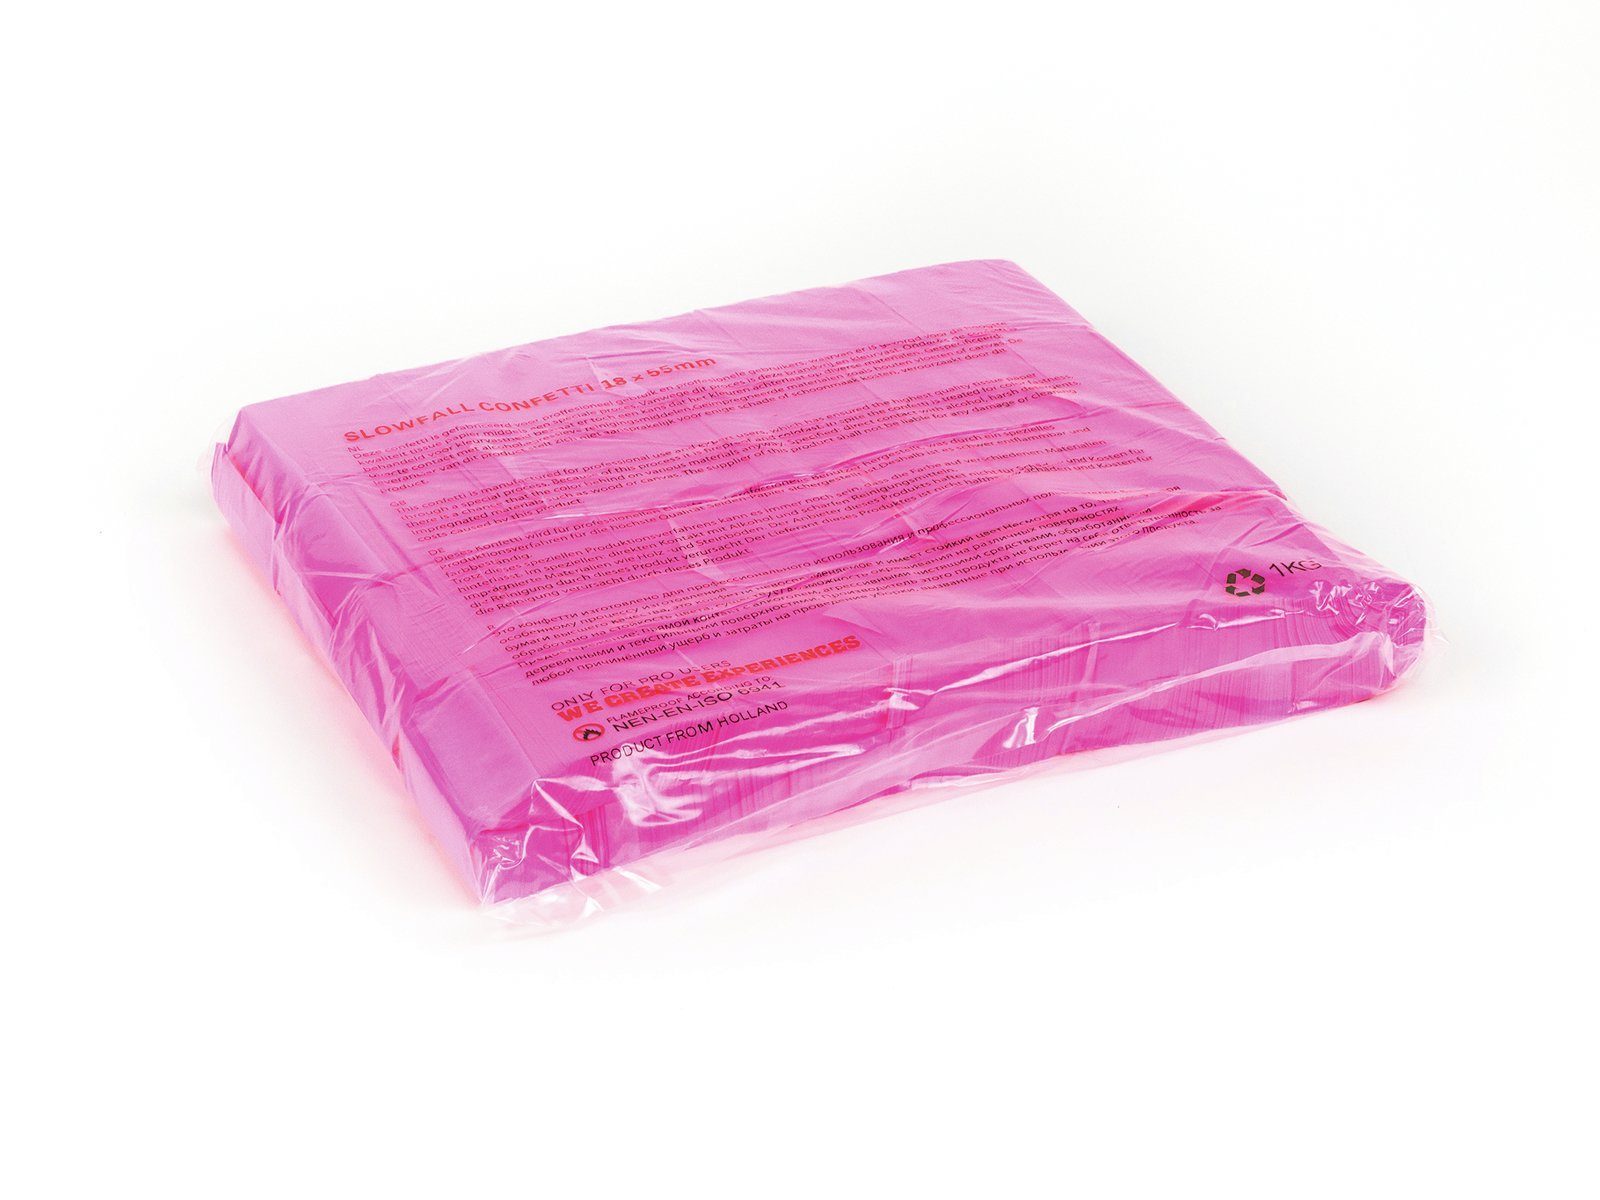 TCM Fx Konfetti Slowfall Konfetti rechteckig 55x18mm, neon, UV-aktiv, 1kg, verschiedene Farben erhältlich pink